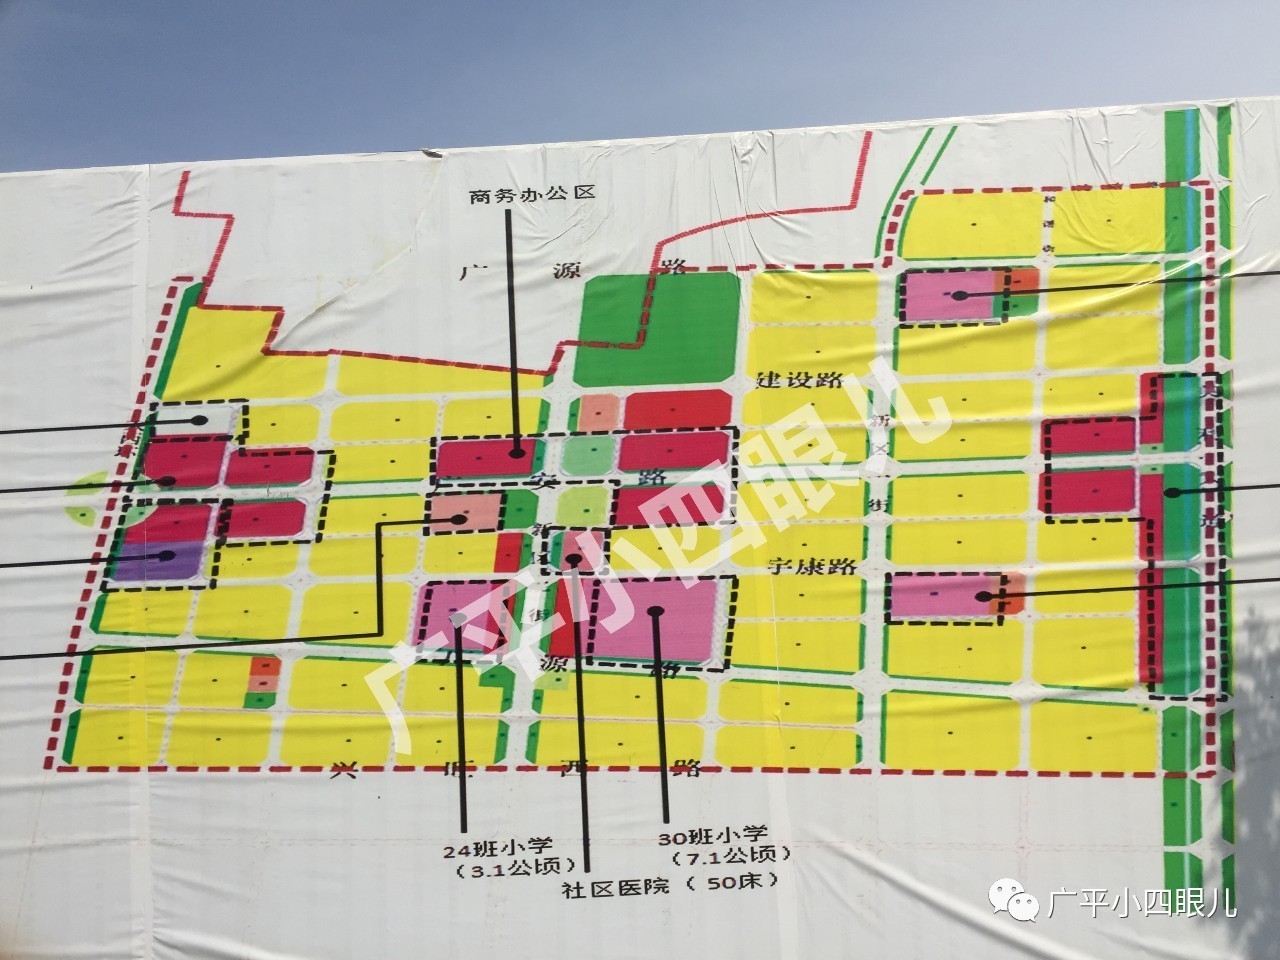 娱乐 正文  近日,网上曝光广平县西部城区规划图,图片中详细说明了图片